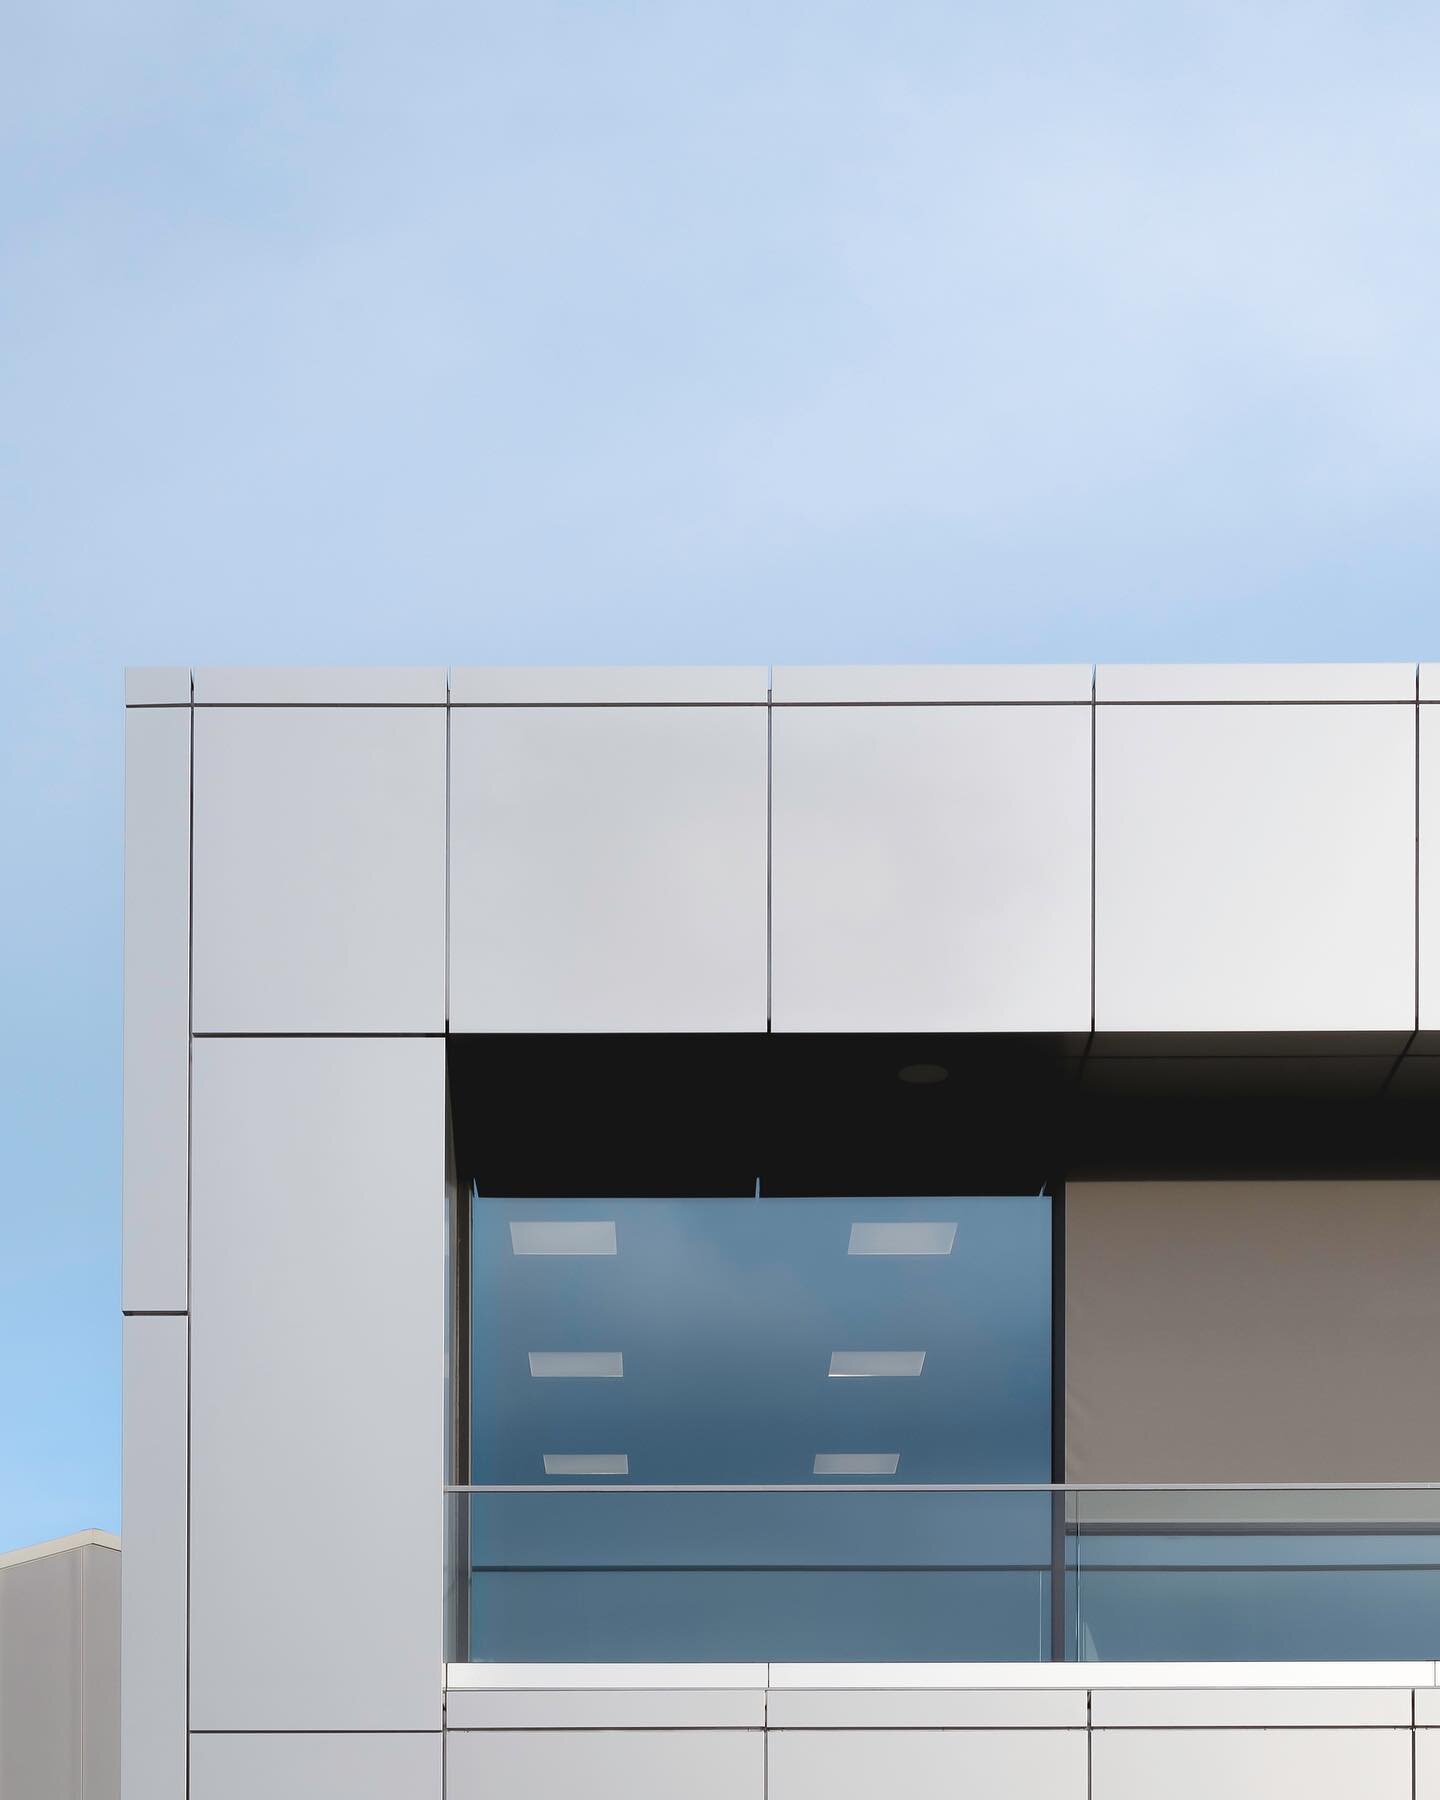 Sneak peek 👀 van ons laatst gerealiseerde bedrijfspand 🤍 
📸 @_franshoek 
.
.
.
#utiliteitsbouw #utiliteitsbouwproject #bedrijfspand #architectenbureau #architectuur #architect #pand #architectfriesland #heeg #heegfriesland #minimalism #architectur